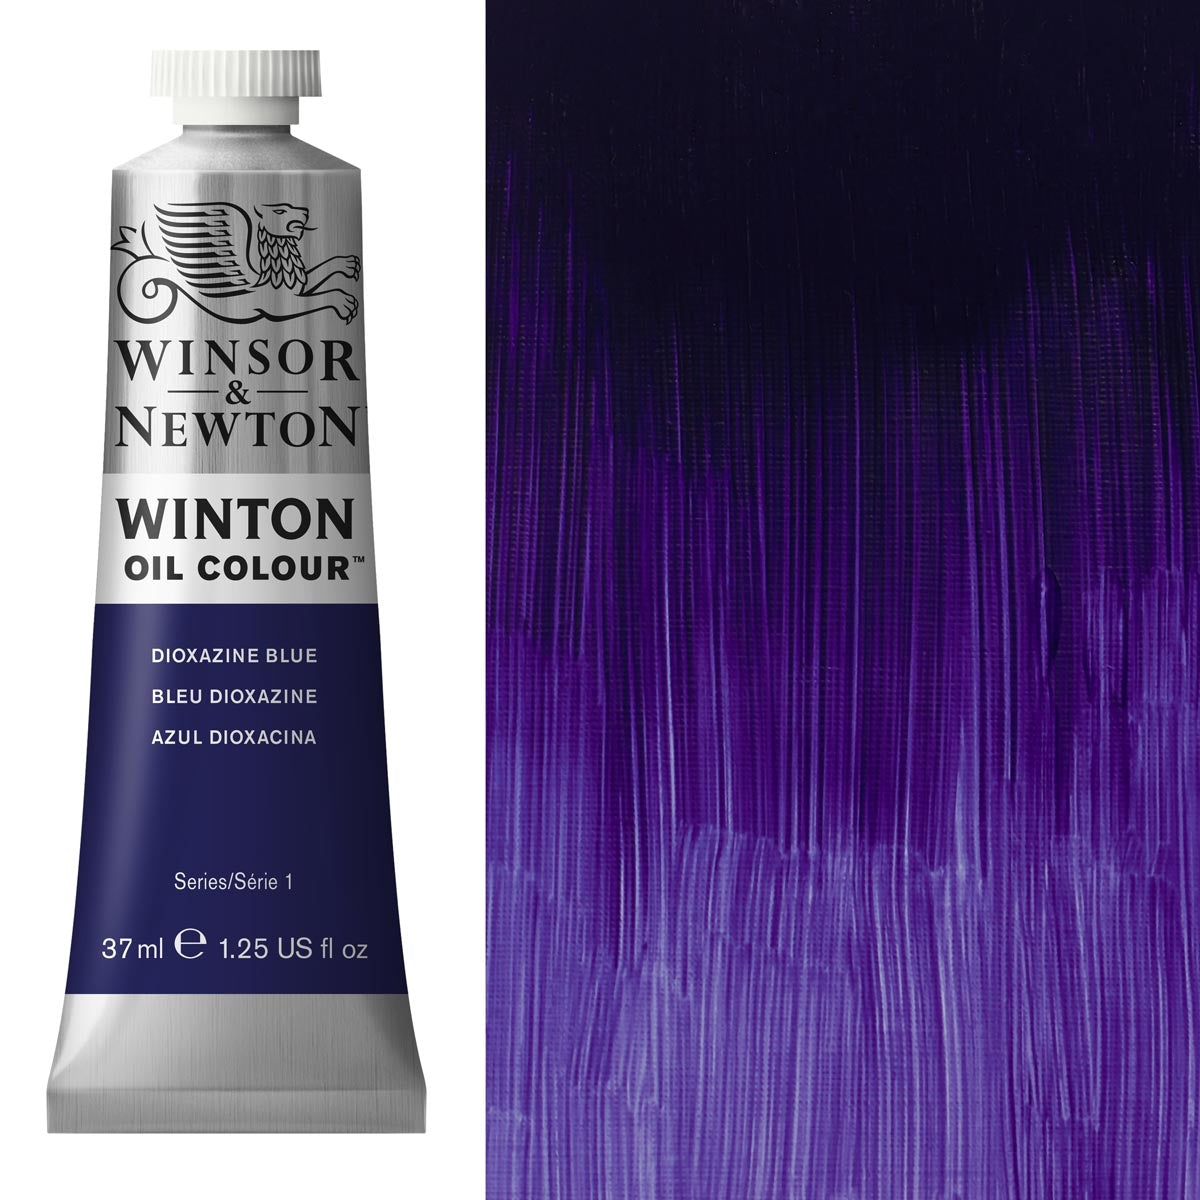 Winsor et Newton - Couleur d'huile Winton - 37 ml - Bleu de dioxazine